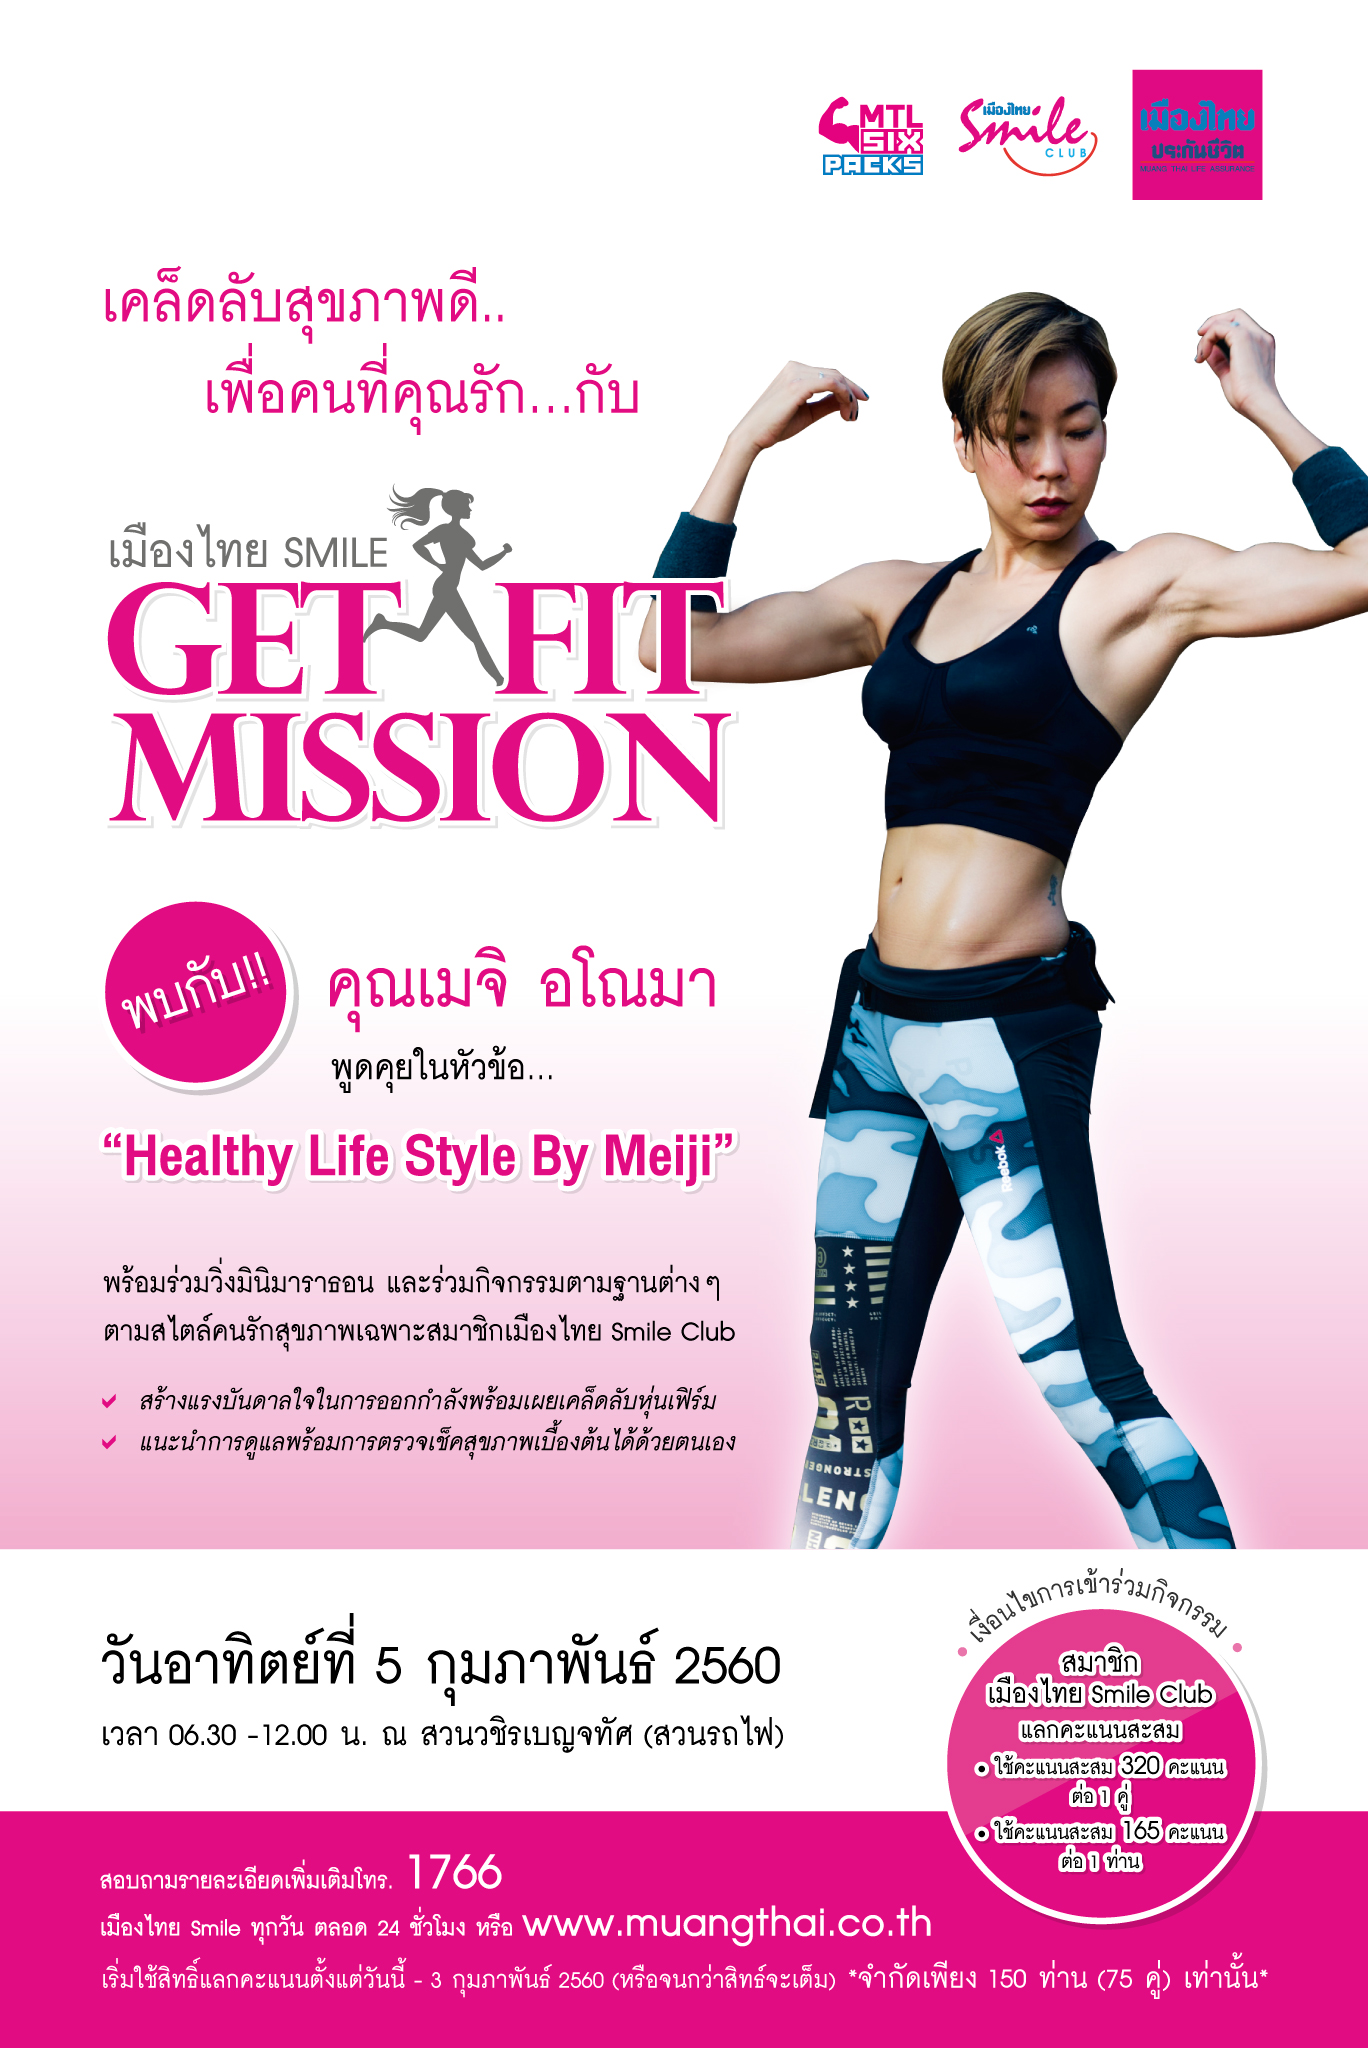 กิจกรรมพิเศษ กับ สุขภาพดี๊ดี โดย เมืองไทย Smile "Get Fit Mission" กับคุณ เมจิ อโณมา